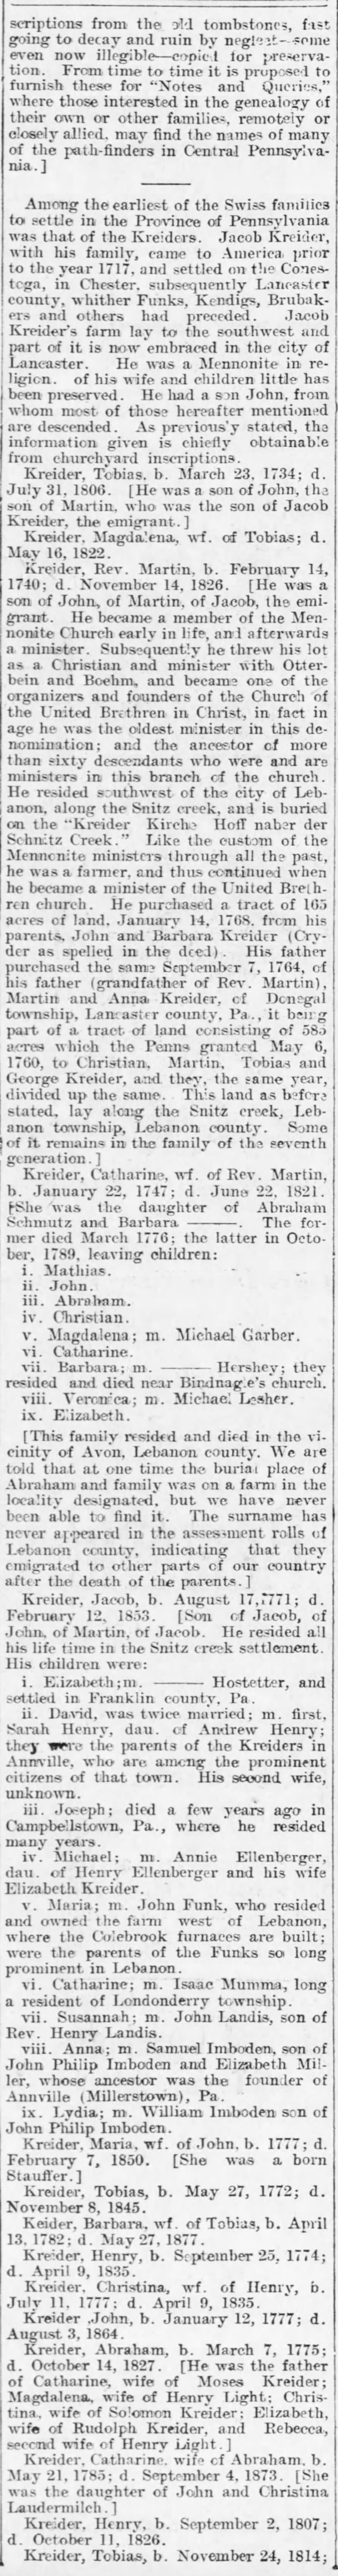 Kreider Family Data:  21 Apr 1900; colume 2